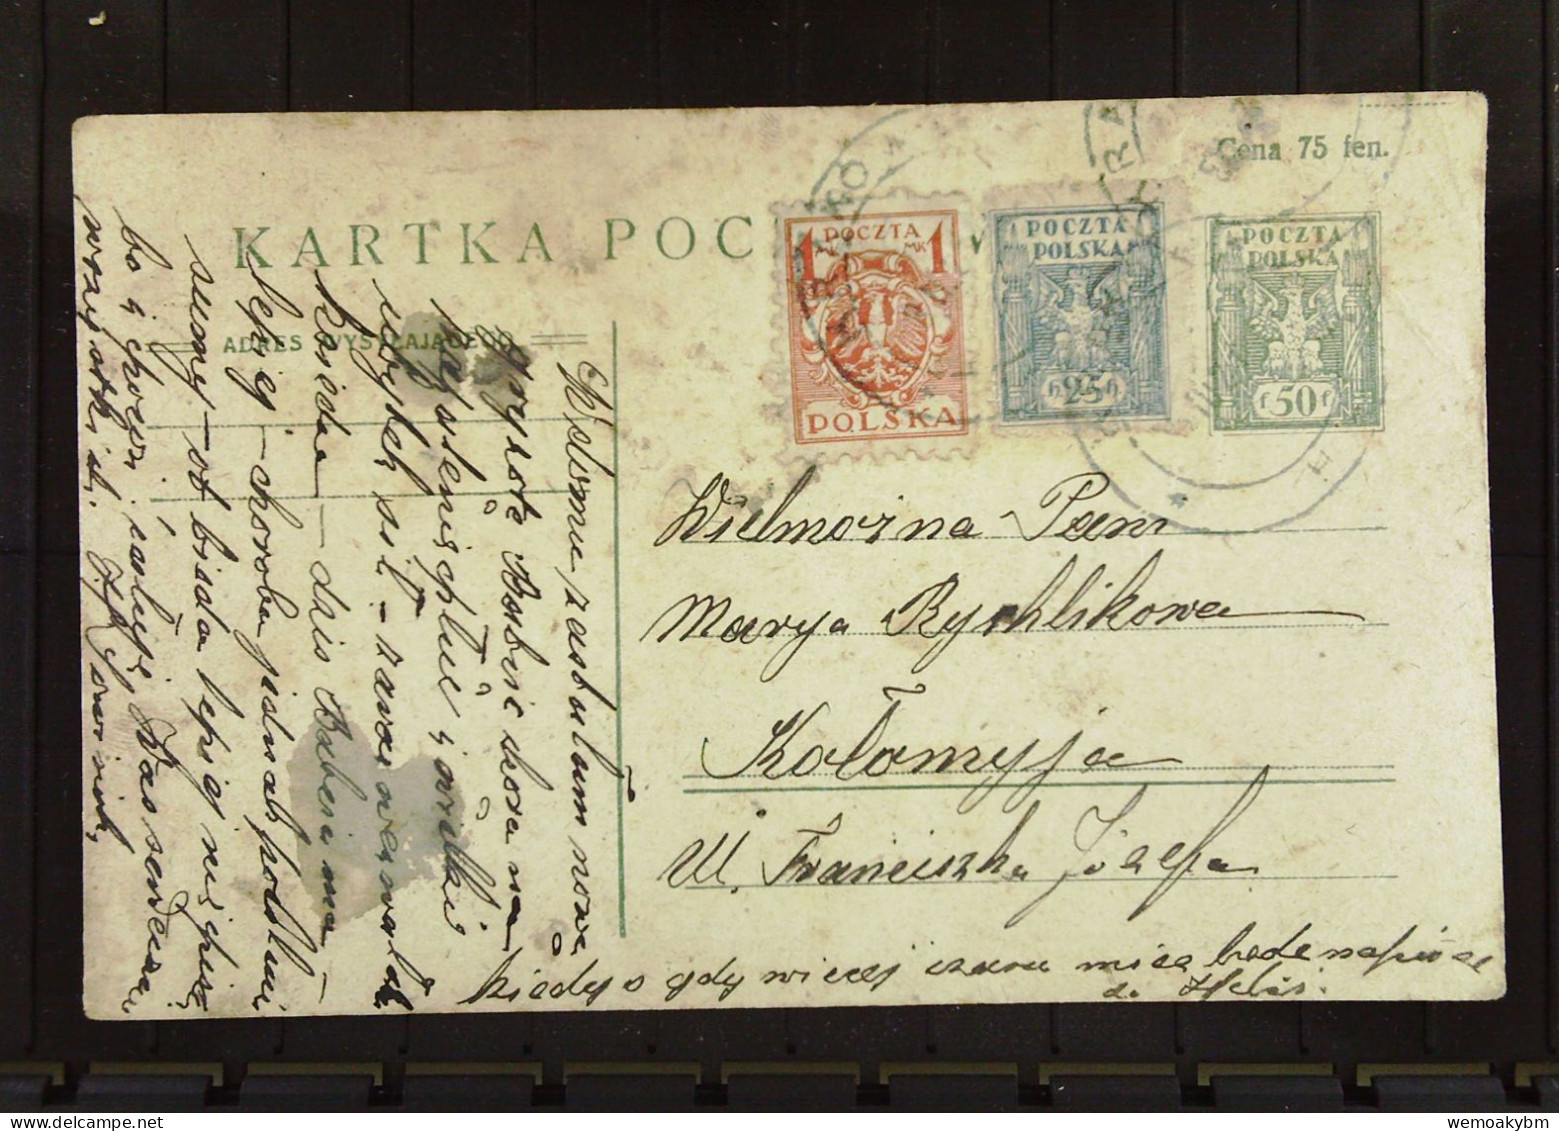 Polen: Ganzsachen-Postkarte Mit POLSKA 50 F Und Zusatz-Marken 25 H Und 1 Mk Um 1920 - Briefe U. Dokumente